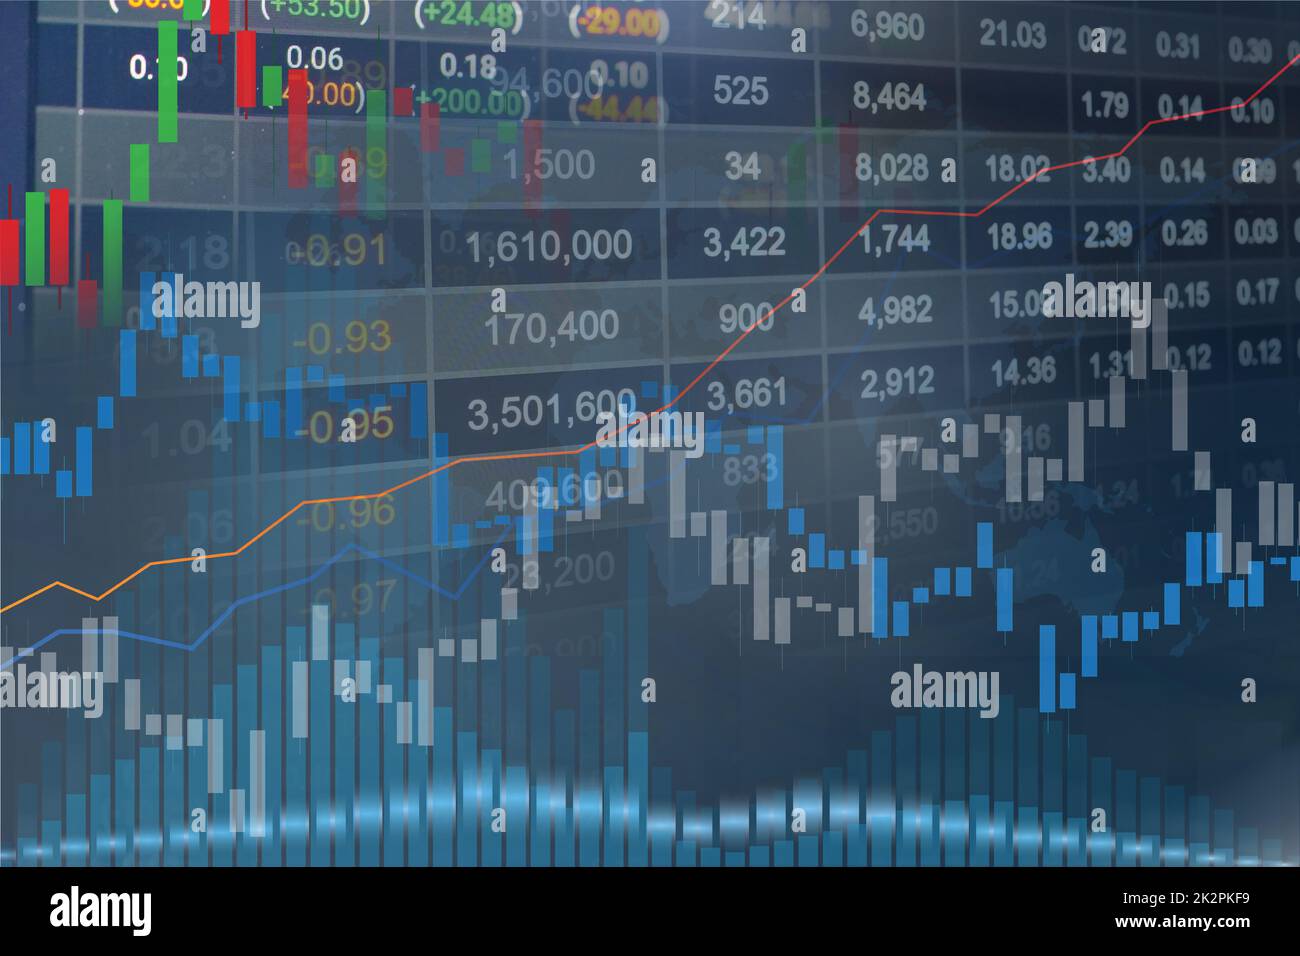 Aktienmarkt Investment Trading Finanz-und Grafik-Chart oder Forex für Analyse Gewinn Finanzierung Geschäft Trend Daten Hintergrund. Stockfoto